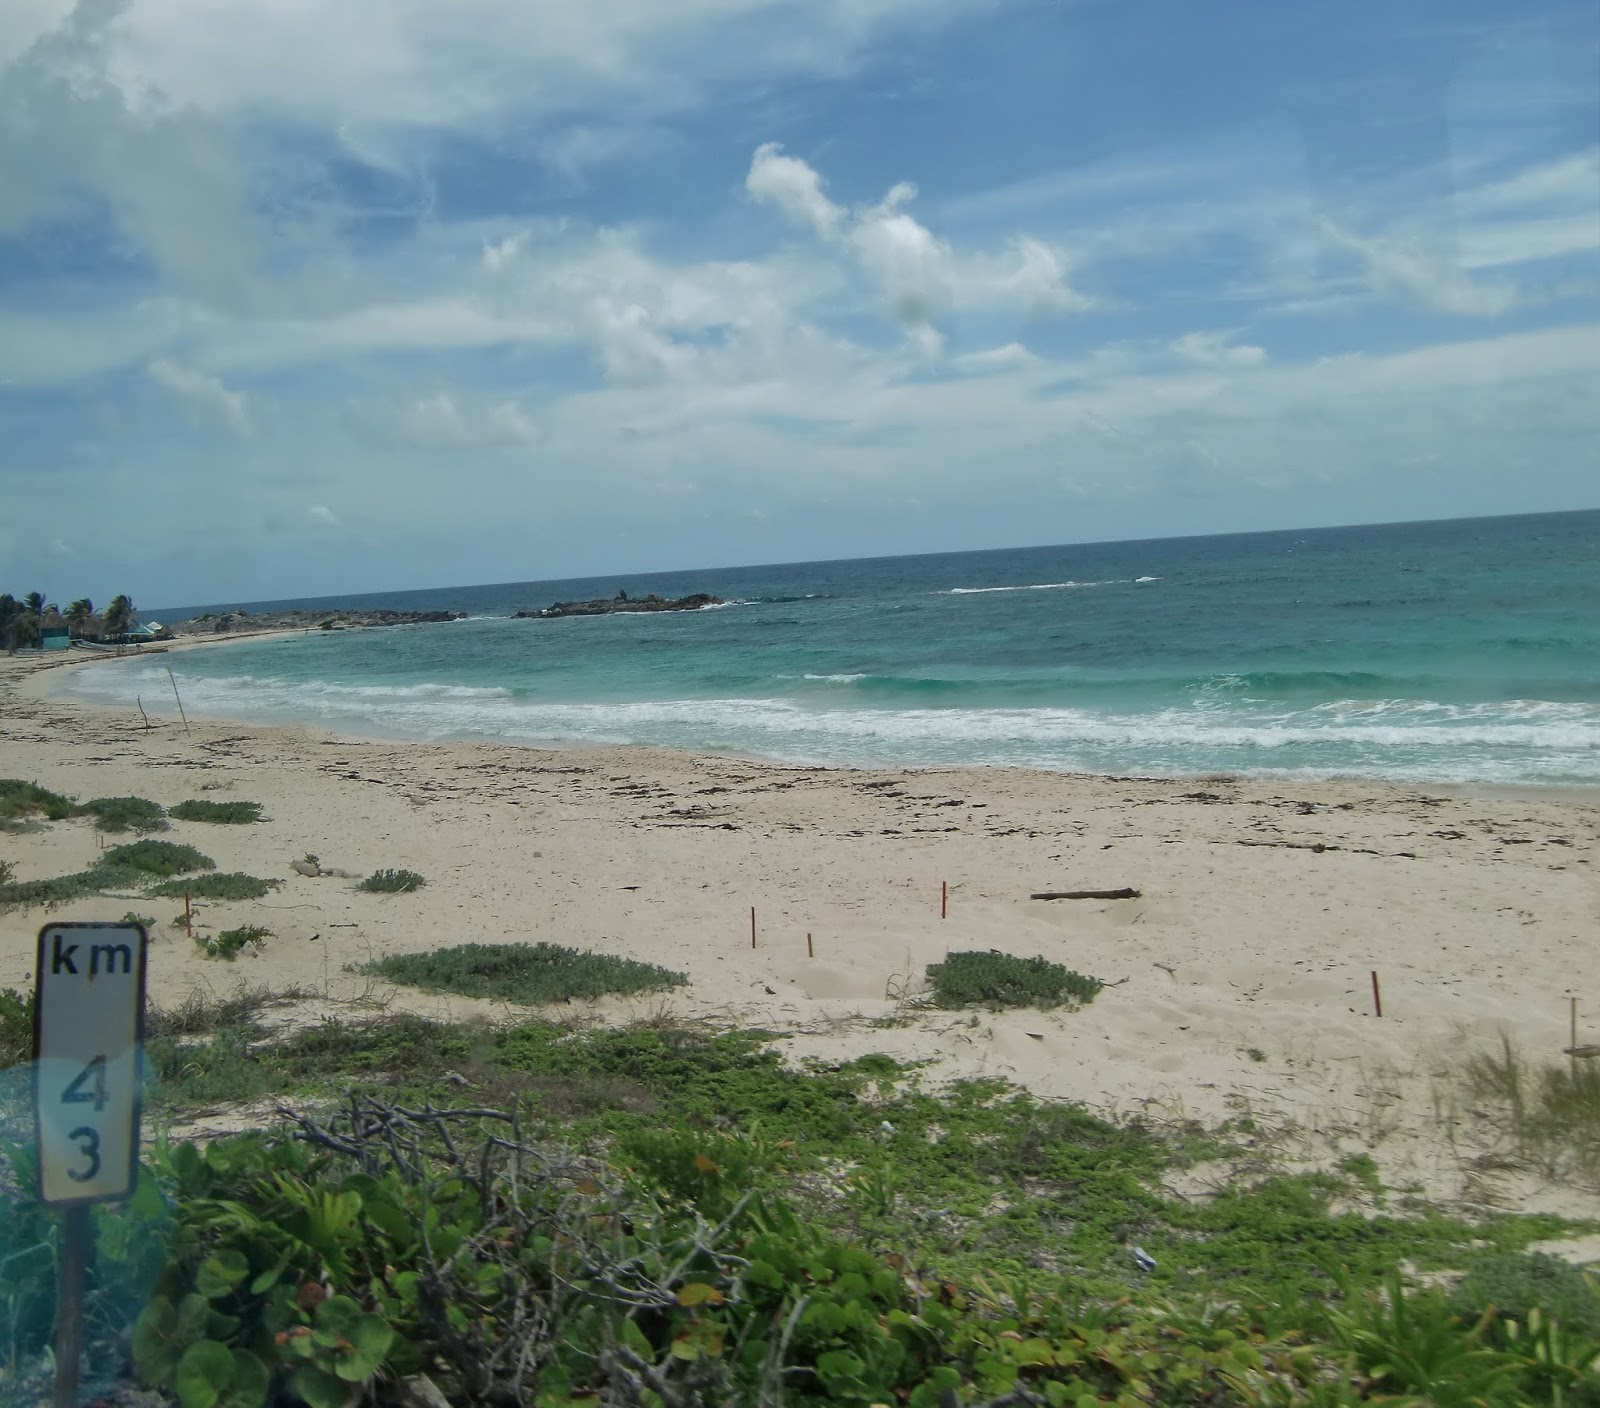 Zdjęcie Bahia La Guera z przestronna plaża